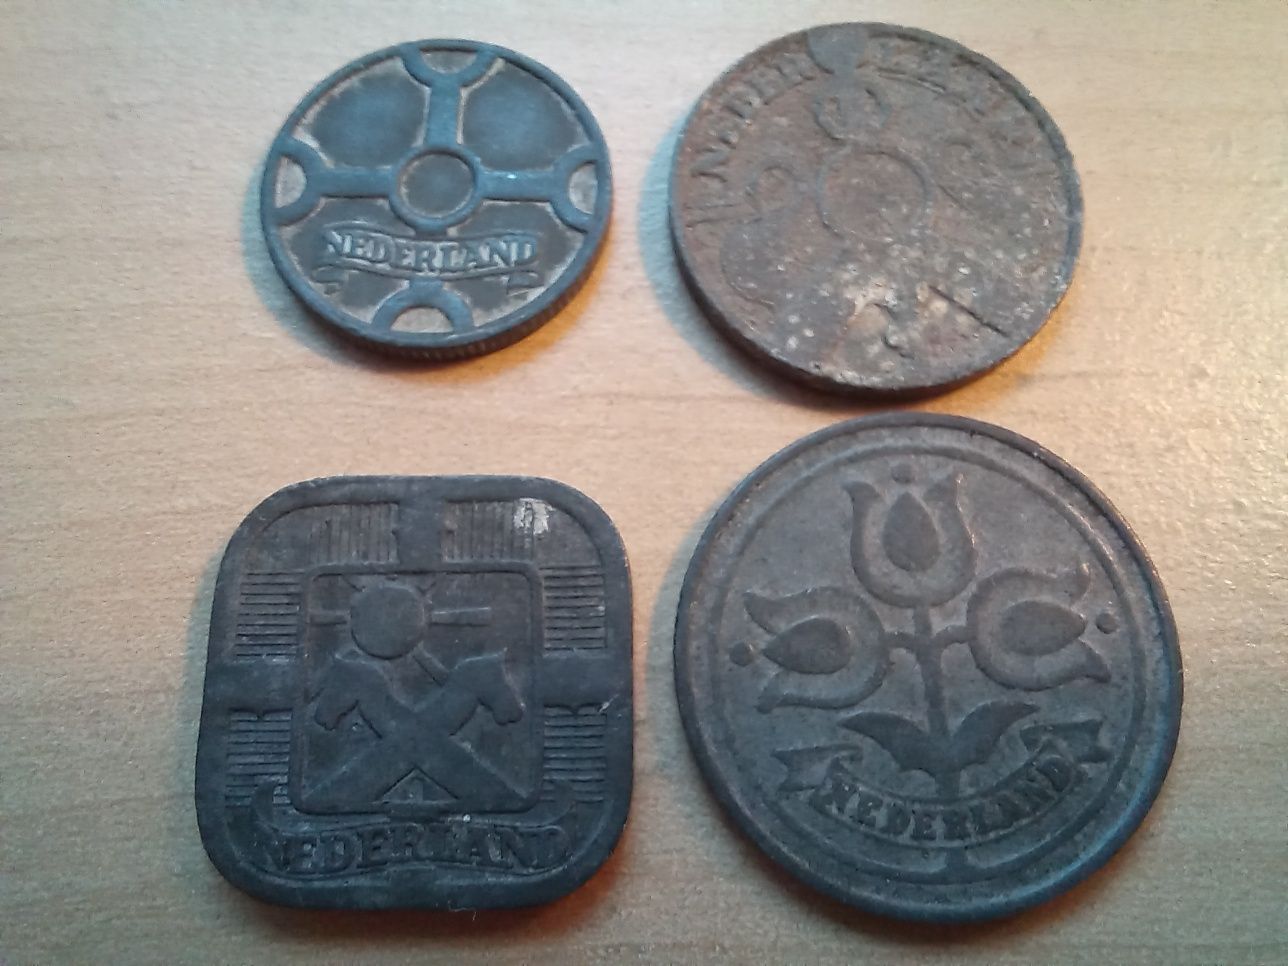 Holandia - 4 historyczne monety obiegowe (czasy II wojny światowej)